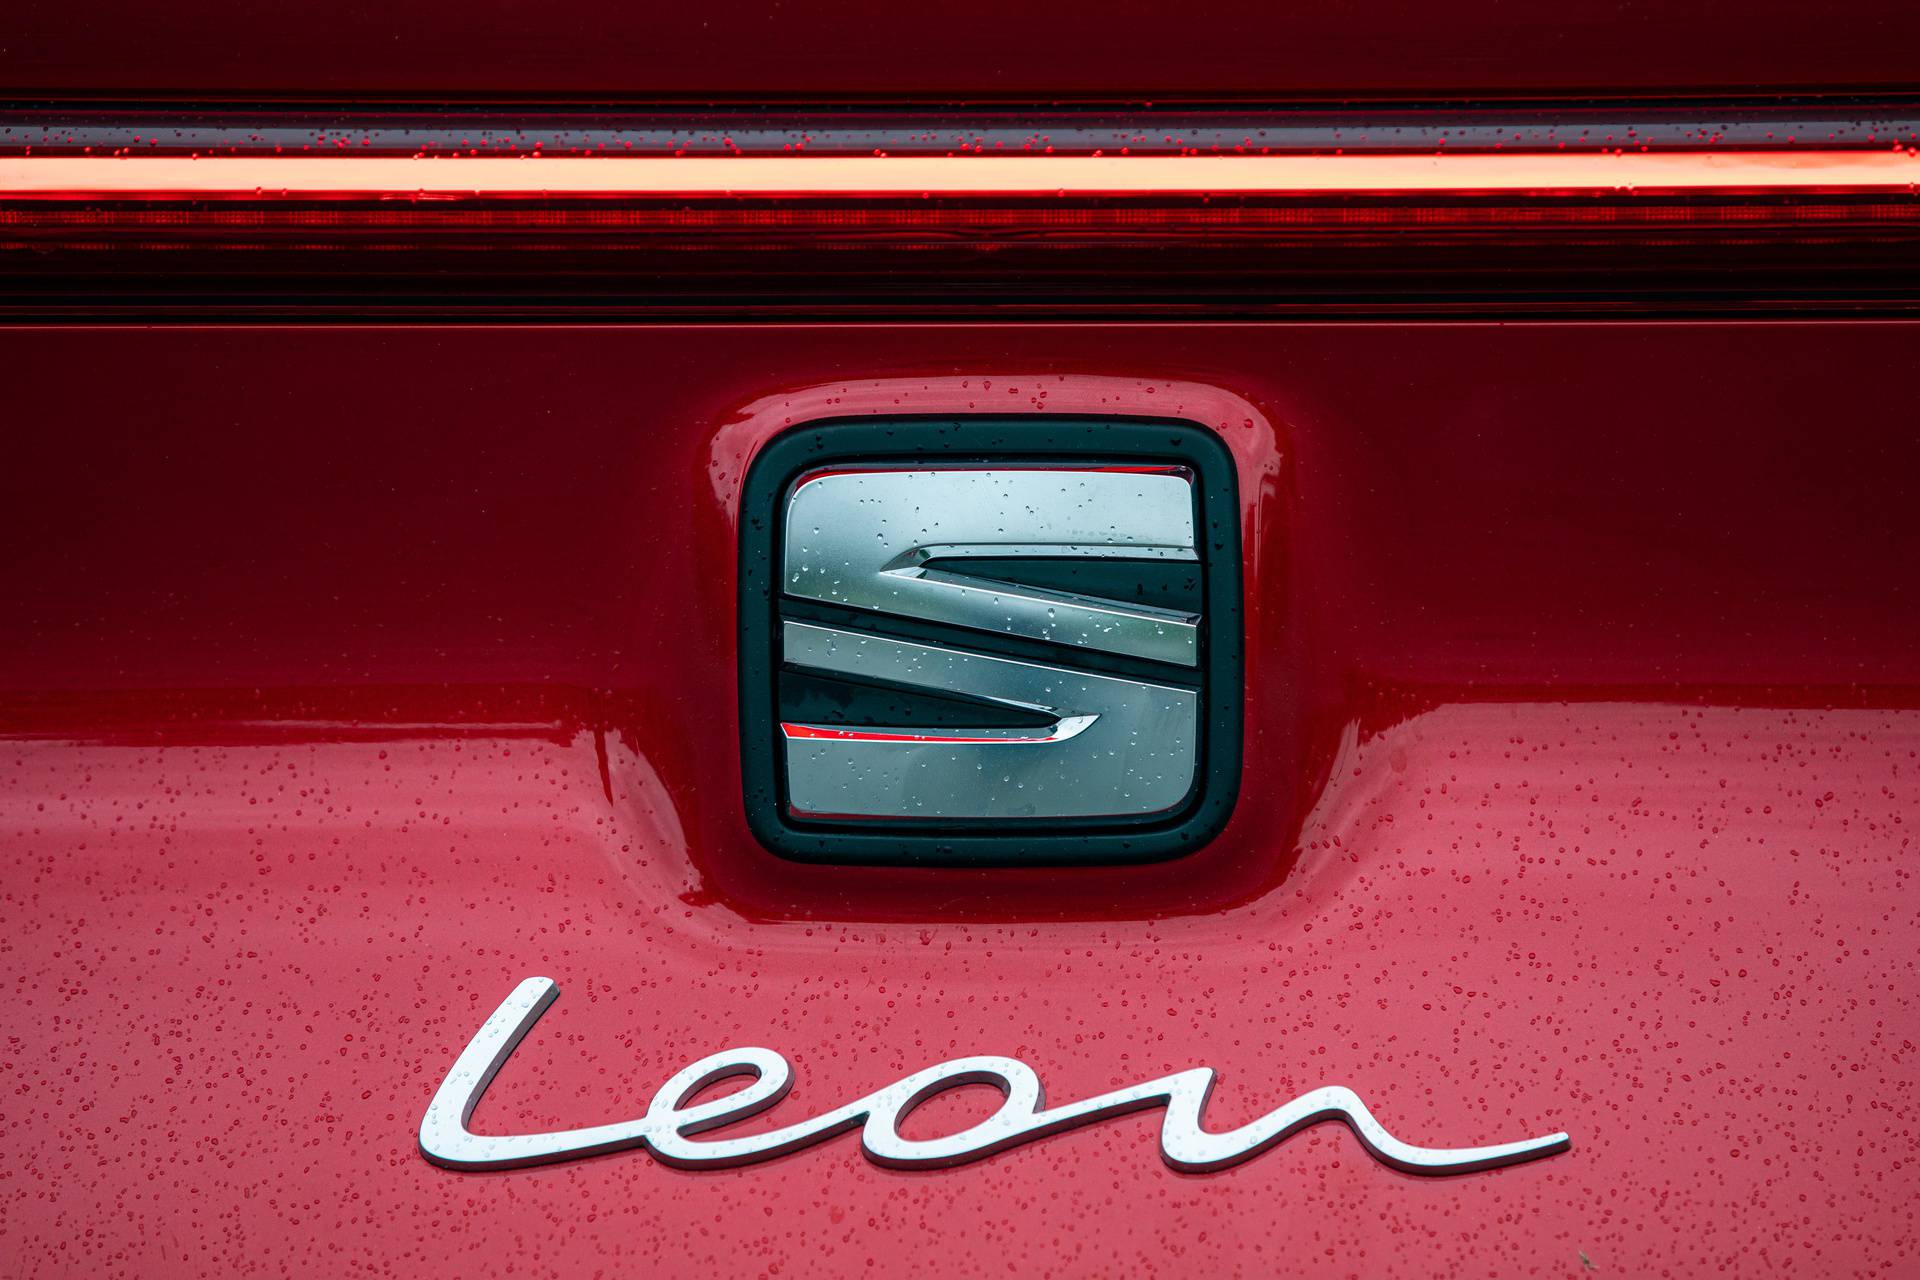 Testirali smo: Seat Leon nije samo španjolska verzija Golfa